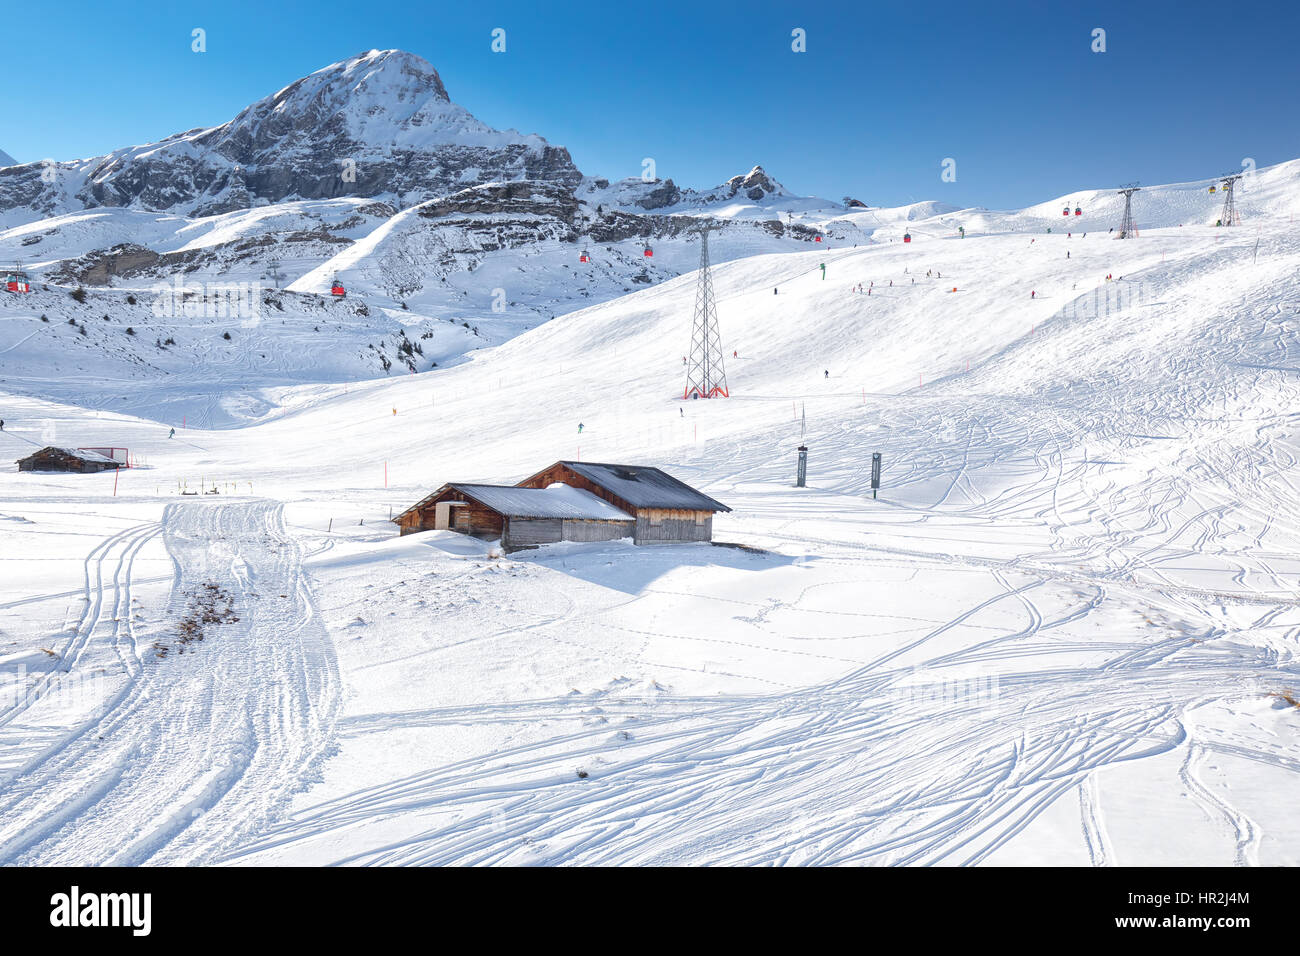 Jungfrau ski Resort unter Eiger, Monch und Jungfrau Gipfeln in Grindelwald, Berner Oberland, Schweiz, Schweizer Alpen. Stockfoto